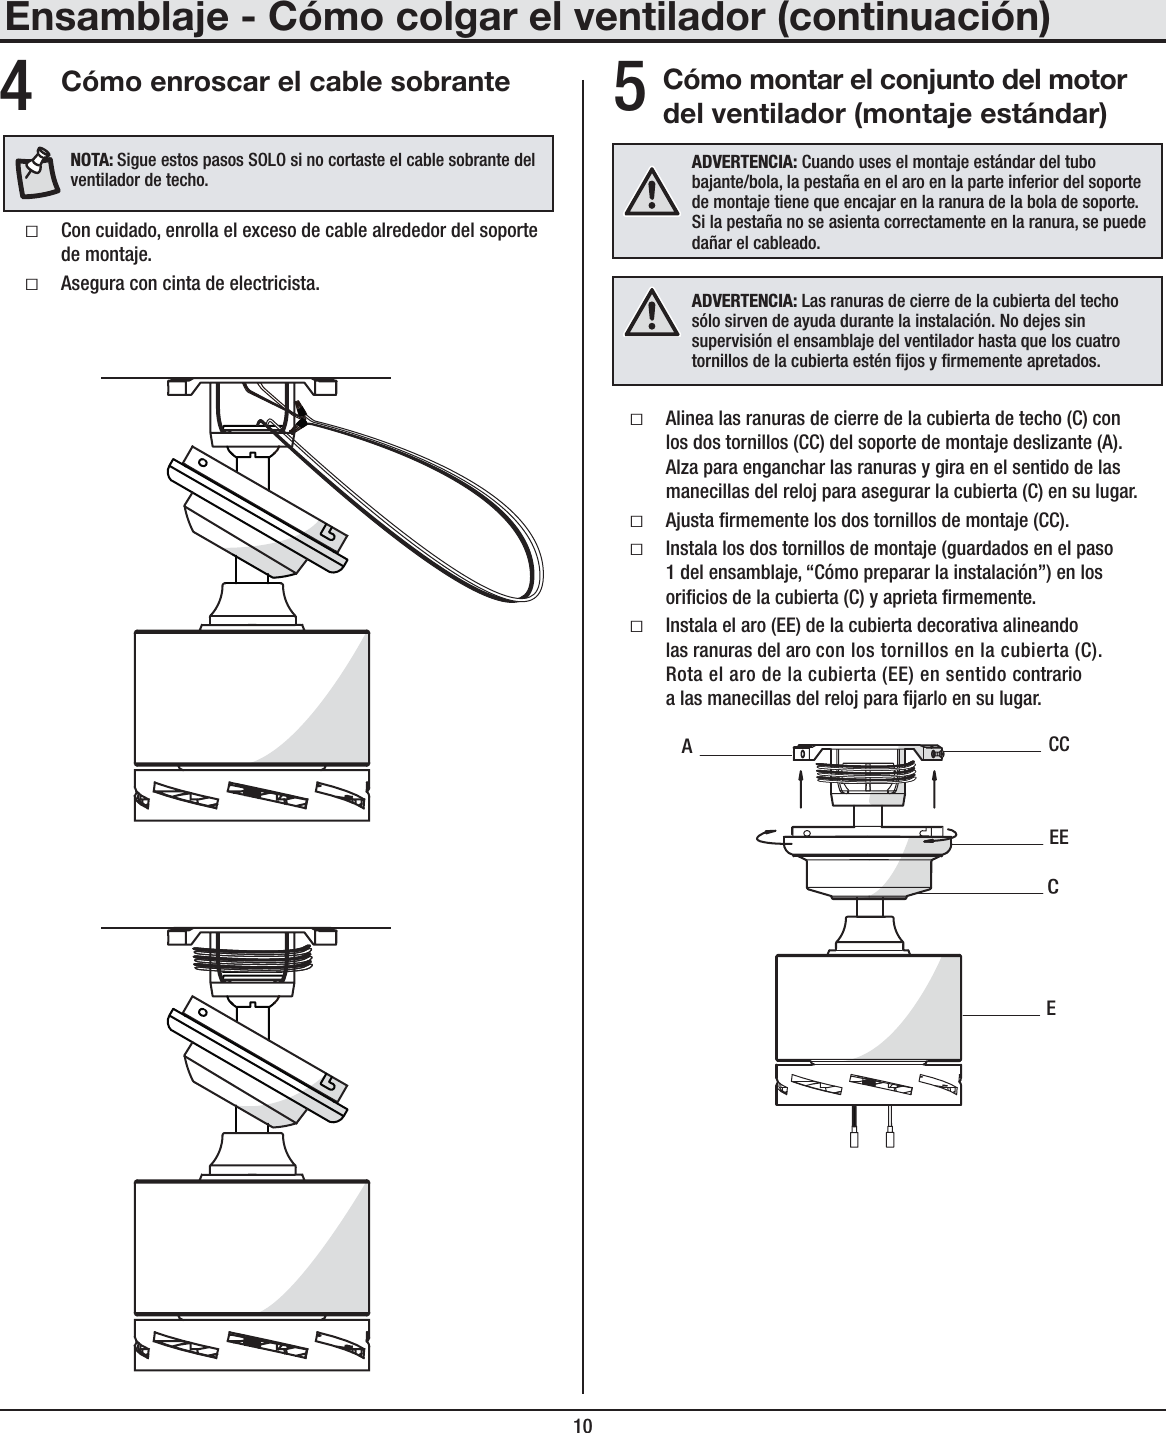 10Cómo montar el conjunto del motor del ventilador (montaje estándar)ƑAlinea las ranuras de cierre de la cubierta de techo (C) con los dos tornillos (CC) del soporte de montaje deslizante (A). Alza para enganchar las ranuras y gira en el sentido de las manecillas del reloj para asegurar la cubierta (C) en su lugar.ƑAjusta rmemente los dos tornillos de montaje (CC).ƑInstala los dos tornillos de montaje (guardados en el paso 1 del ensamblaje, “Cómo preparar la instalación”) en los oricios de la cubierta (C) y aprieta rmemente.ƑInstala el aro (EE) de la cubierta decorativa alineando las ranuras del aro con los tornillos en la cubierta (C). Rota el aro de la cubierta (EE) en sentido contrario a las manecillas del reloj para jarlo en su lugar.ADVERTENCIA: Cuando uses el montaje estándar del tubo bajante/bola, la pestaña en el aro en la parte inferior del soporte de montaje tiene que encajar en la ranura de la bola de soporte. Si la pestaña no se asienta correctamente en la ranura, se puede dañar el cableado.ECCCEEAEnsamblaje - Cómo colgar el ventilador (continuación)5Cómo enroscar el cable sobranteƑCon cuidado, enrolla el exceso de cable alrededor del soporte de montaje.ƑAsegura con cinta de electricista.4NOTA:Sigue estos pasos SOLO si no cortaste el cable sobrante del ventilador de techo.ADVERTENCIA: Las ranuras de cierre de la cubierta del techo sólo sirven de ayuda durante la instalación. No dejes sin supervisión el ensamblaje del ventilador hasta que los cuatro tornillos de la cubierta estén jos y rmemente apretados.